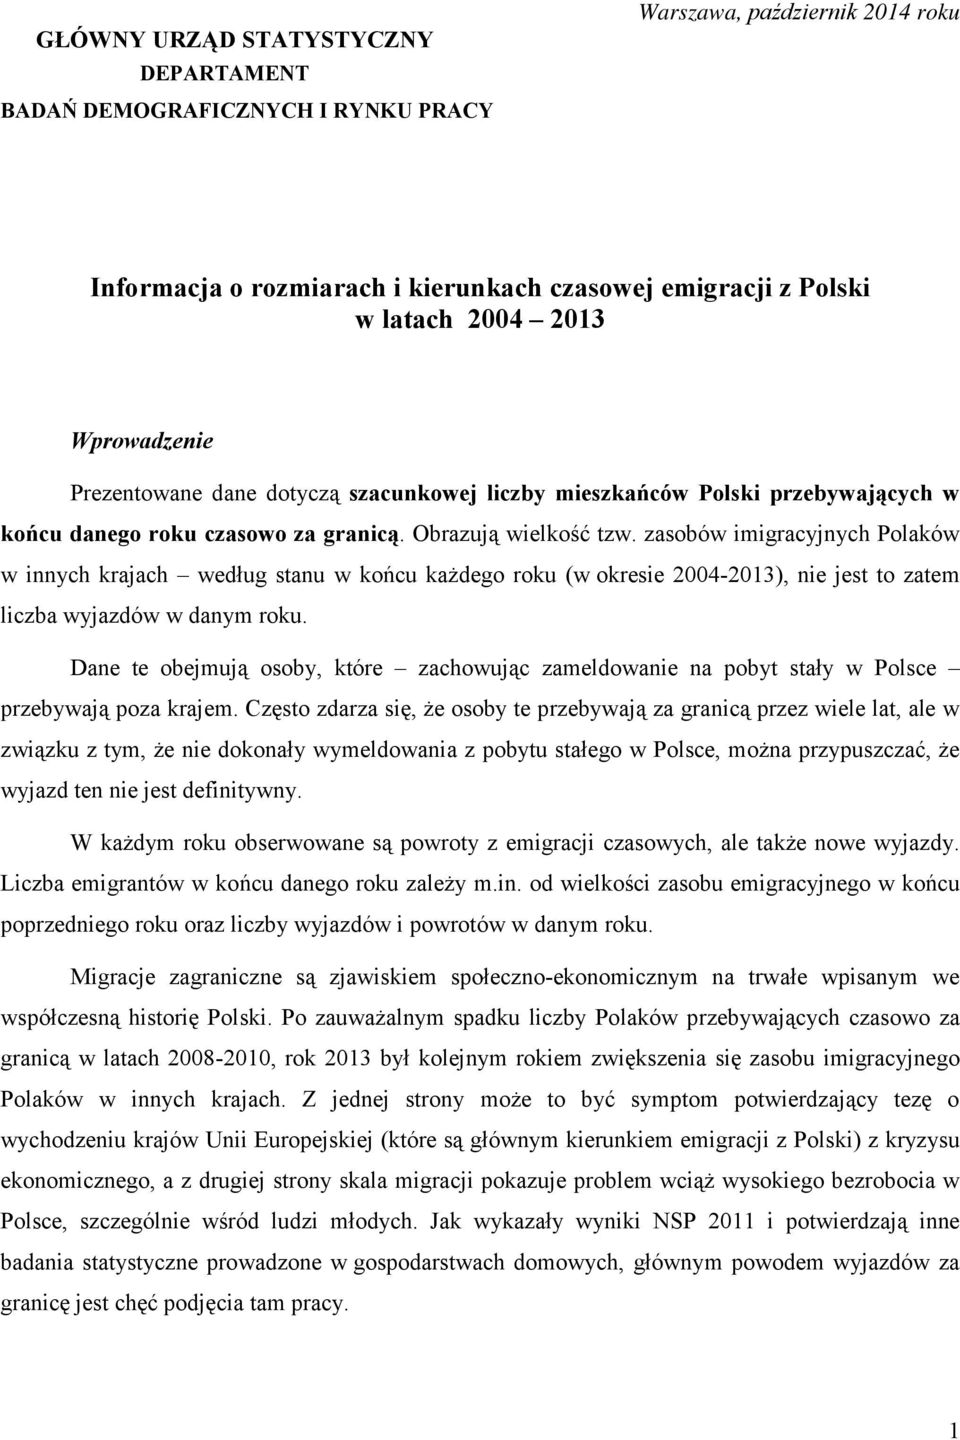 zasobów imigracyjnych Polaków w innych krajach według stanu w końcu każdego roku (w okresie 2004-2013), nie jest to zatem liczba wyjazdów w danym roku.